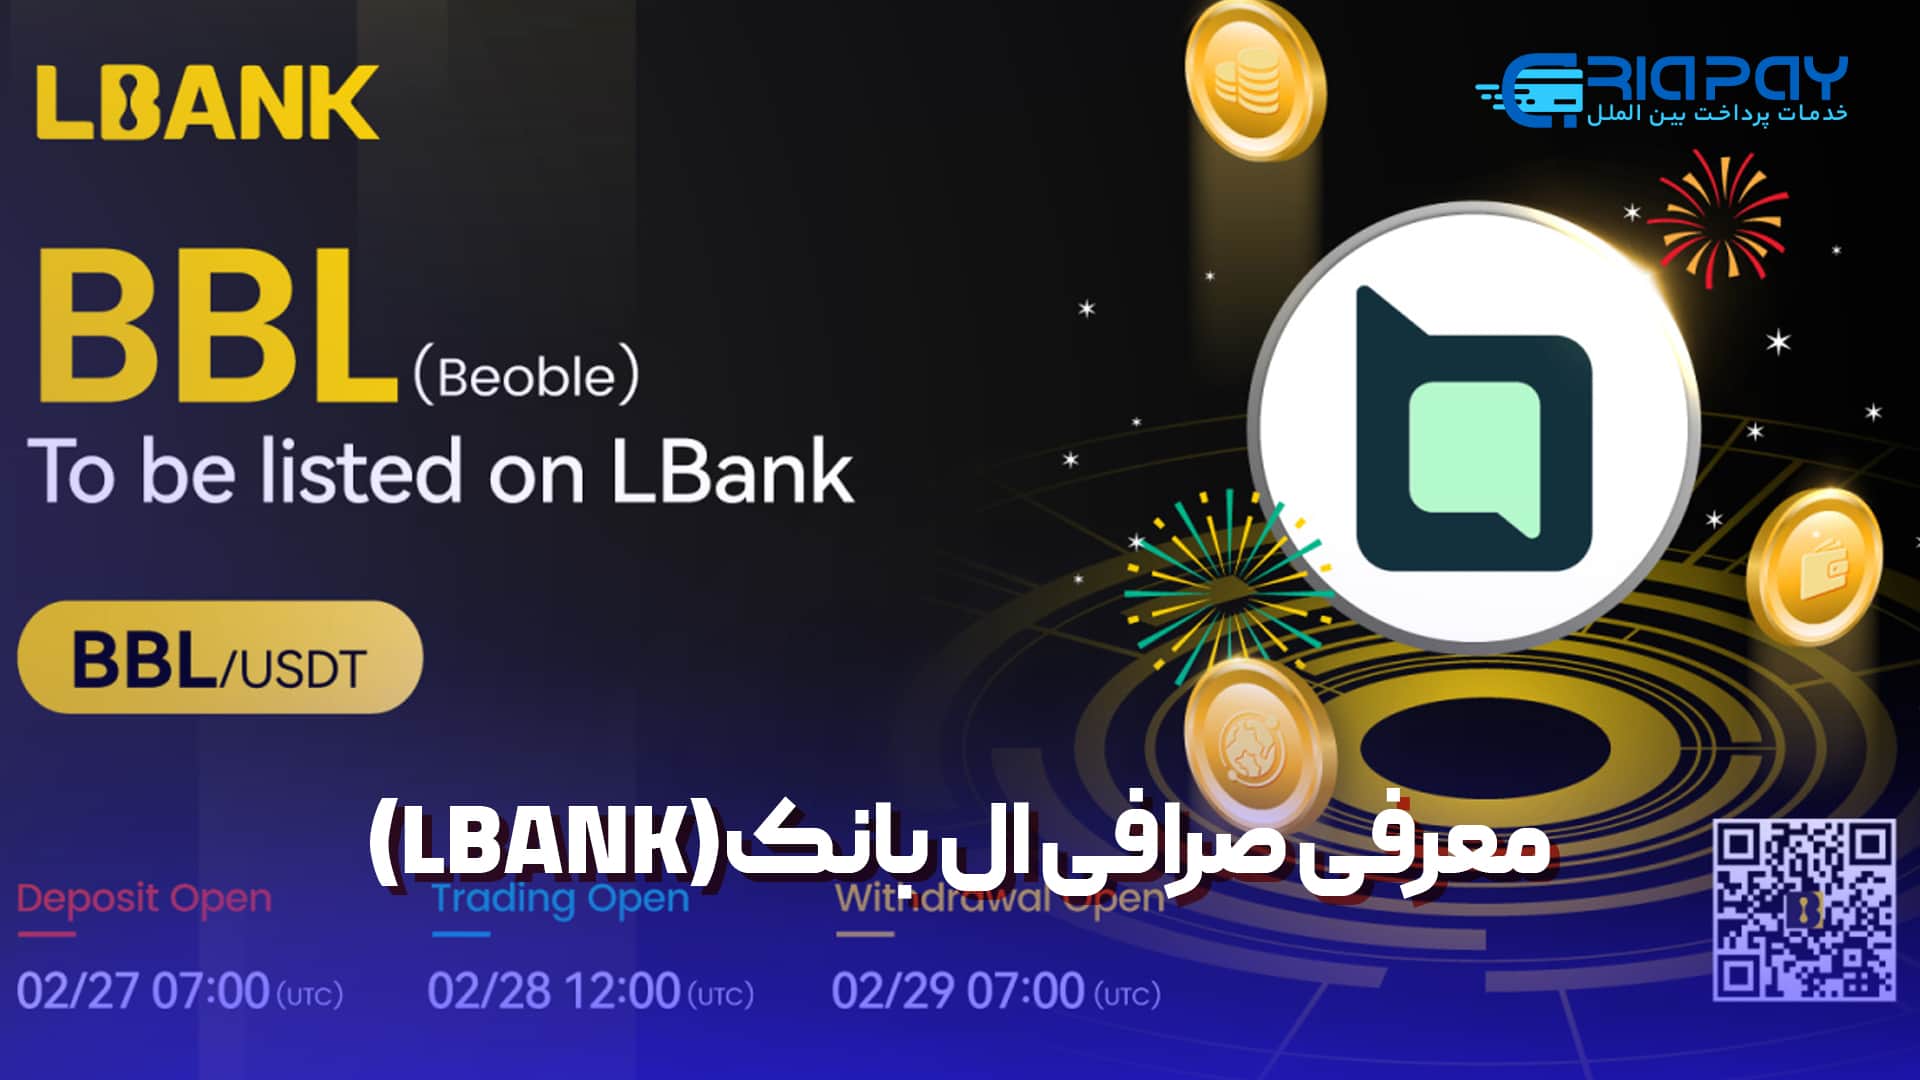 معرفی صرافی ال بانک Lbank